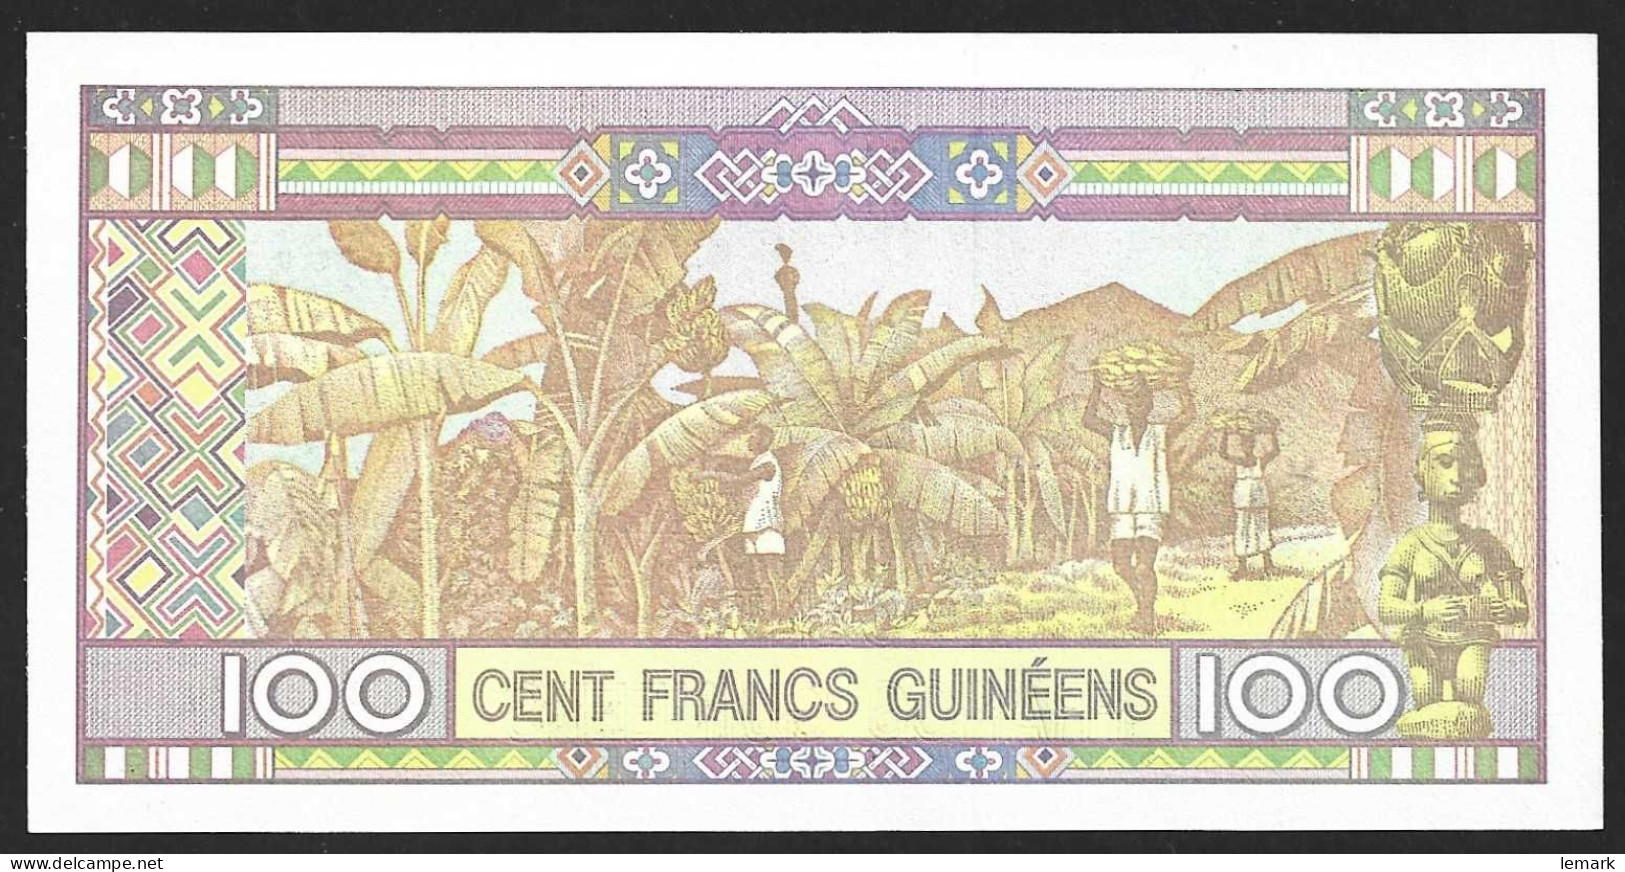 Guinea 100 Francs 2015 P47 UNC - Guinée